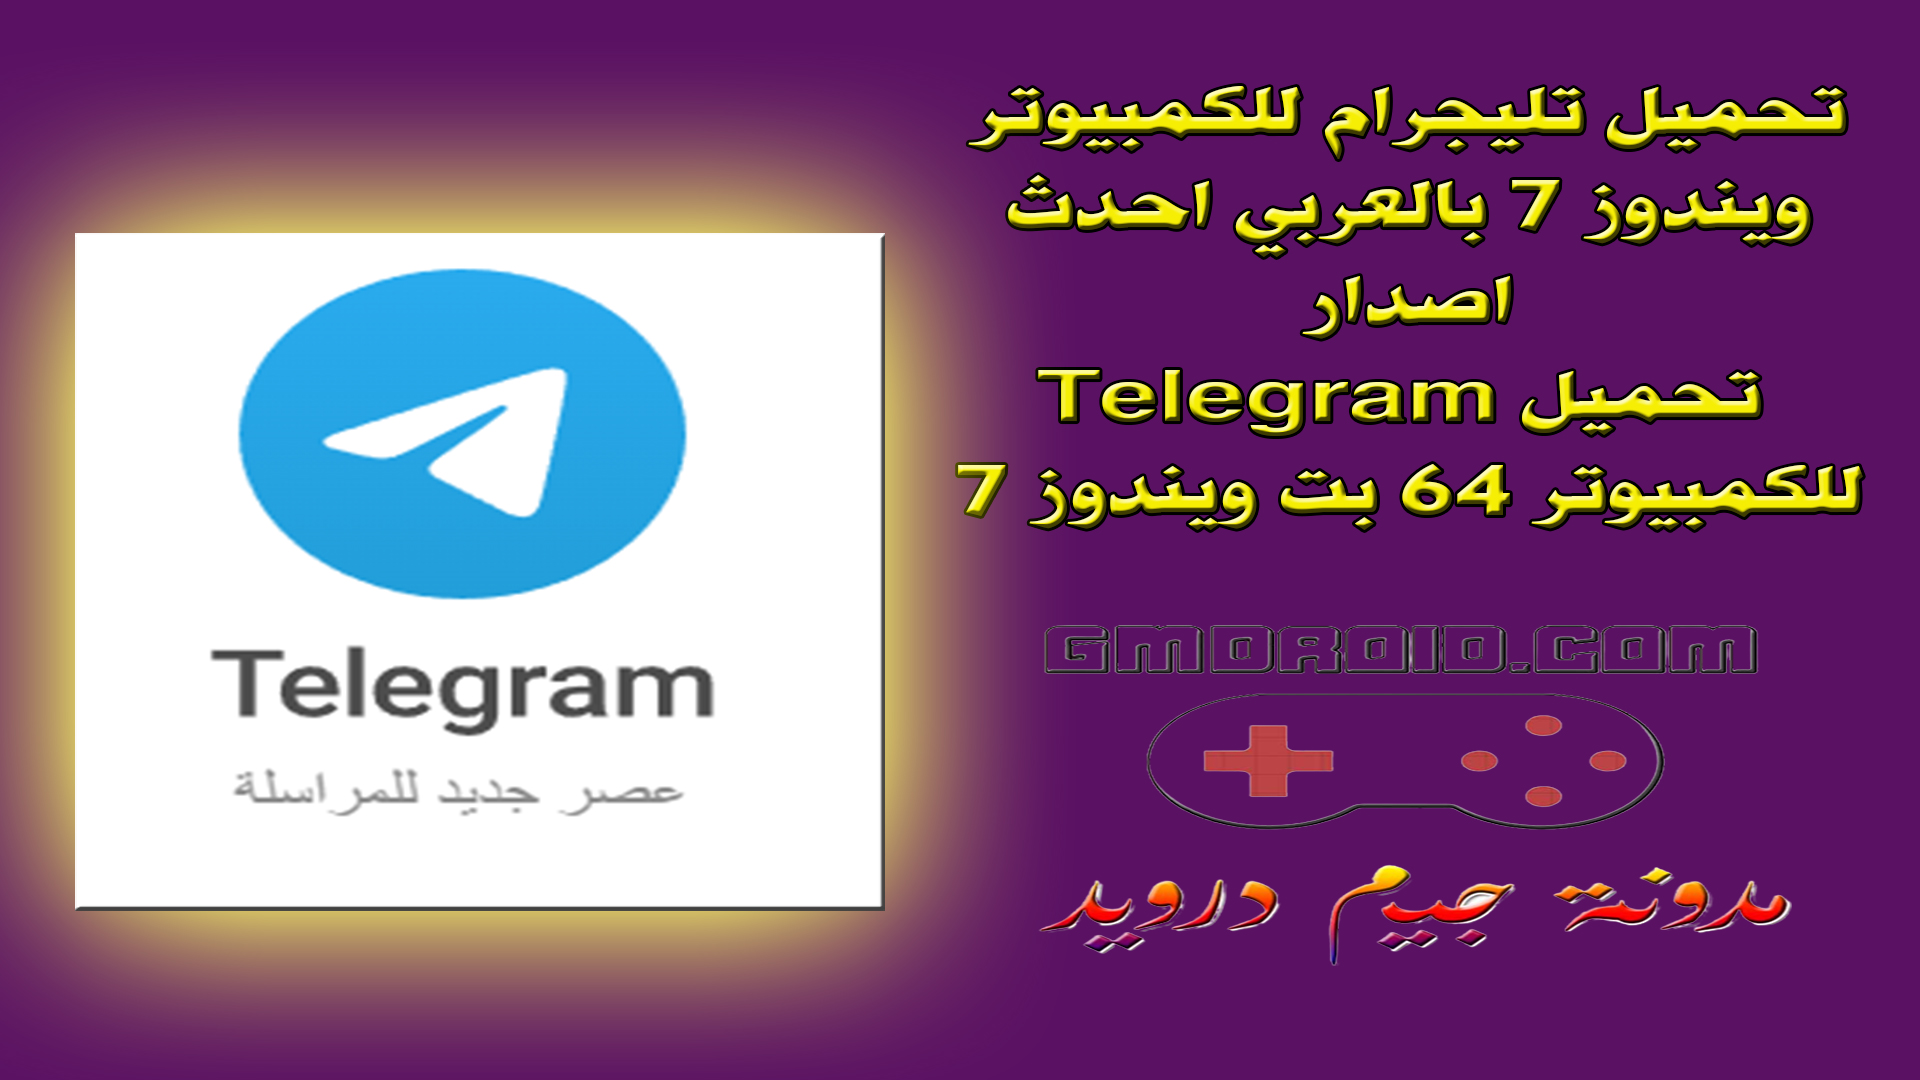 تحميل تليجرام للكمبيوتر ويندوز 7 بالعربي احدث اصدار - تحميل Telegram للكمبيوتر 64 بت ويندوز 7